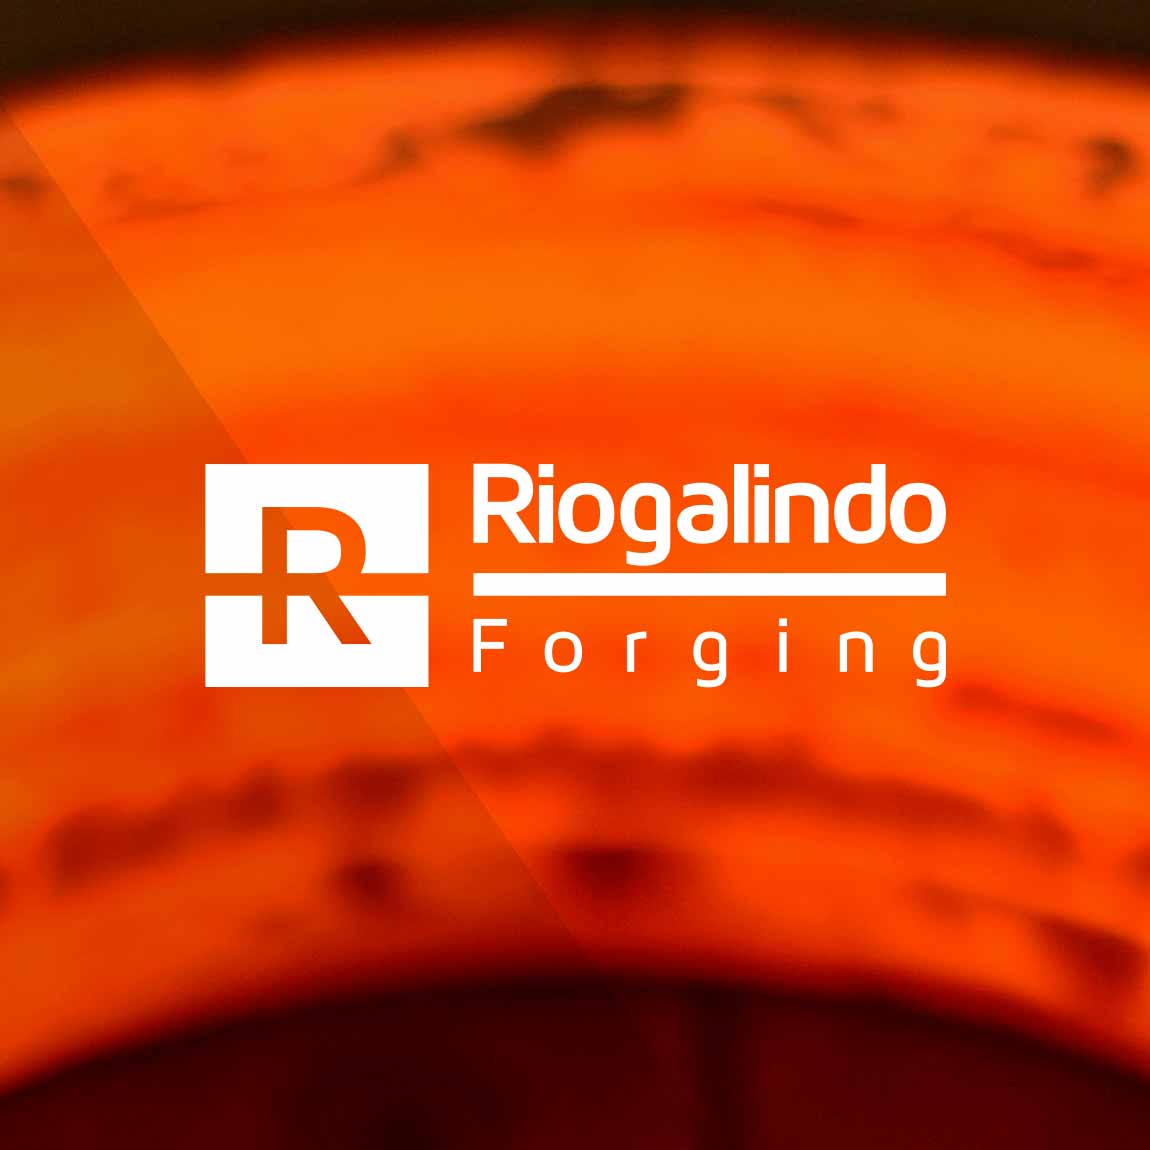 Riogalindo Forging